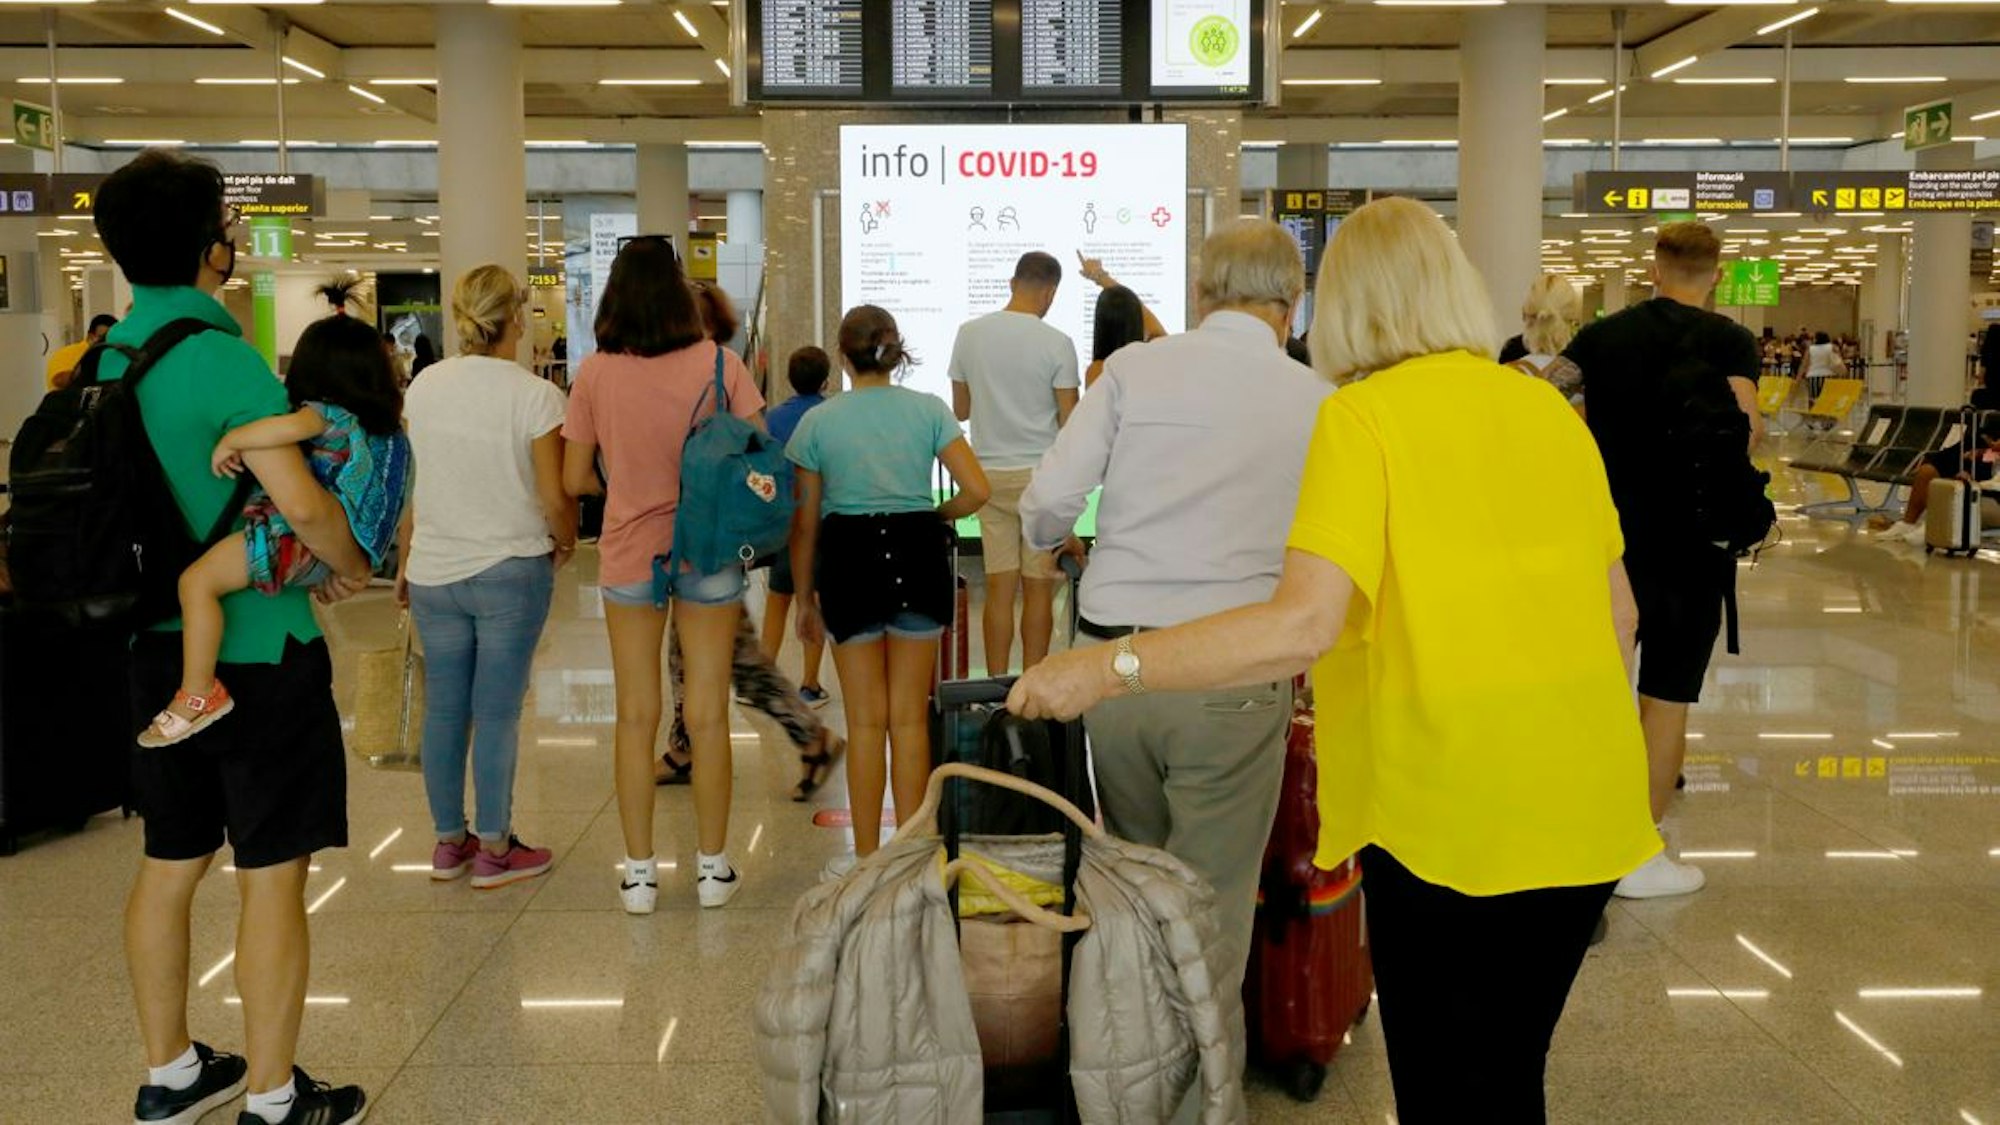 Menschen informieren sich am 1. August 2021 im Abflugbereich des Flughafens von Palma de Mallorca über Corona-Regeln. Für die Herbstferien wurden zwei getrennte Schlangen für geimpfte und ungeimpfte Reisende eingerichtet.